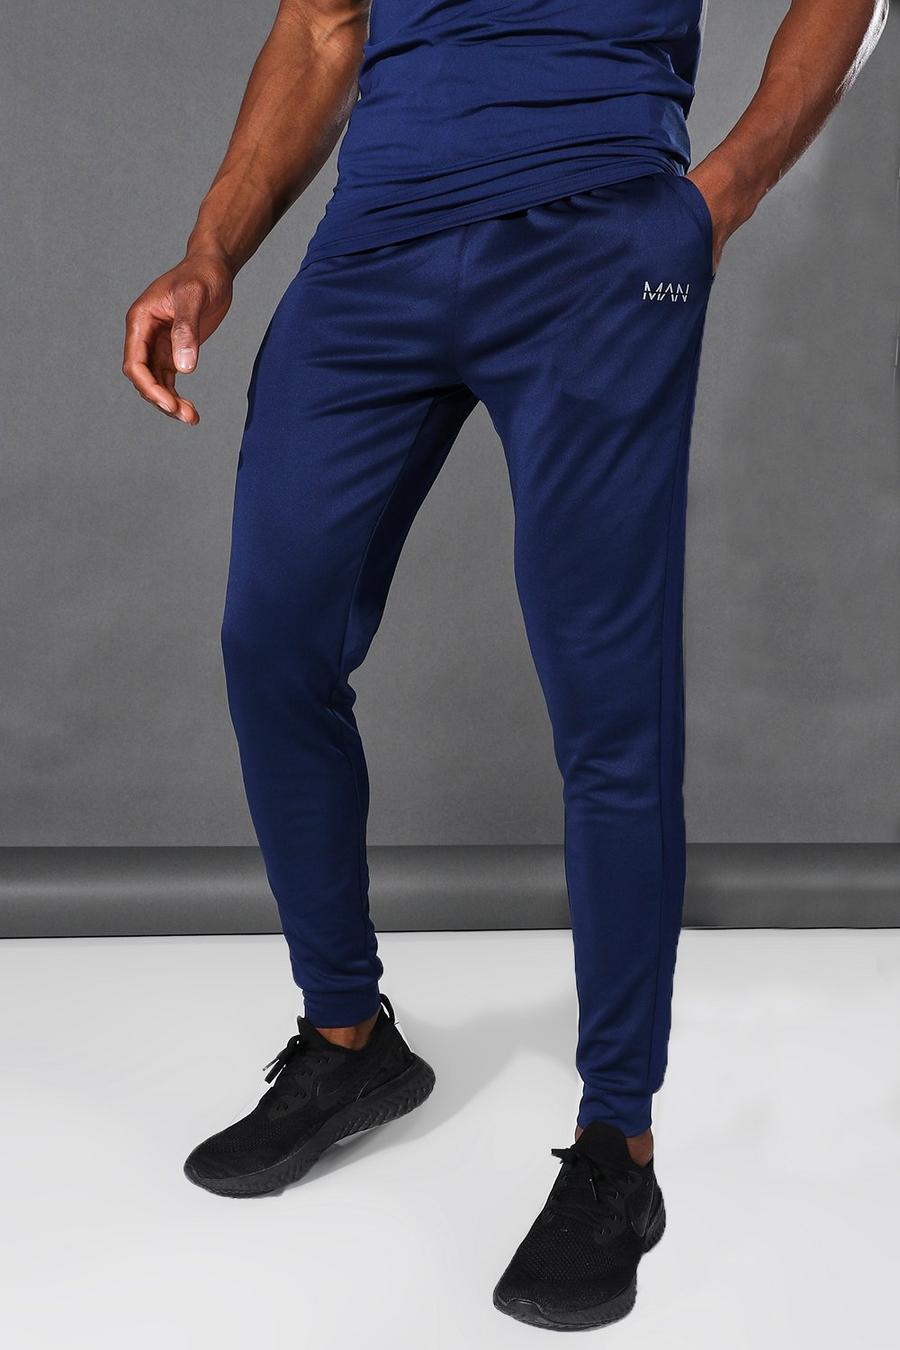 נייבי azul marino מכנסי ריצה ספורטיביים עם עיטור בצבע מנוגד וכיתוב Man